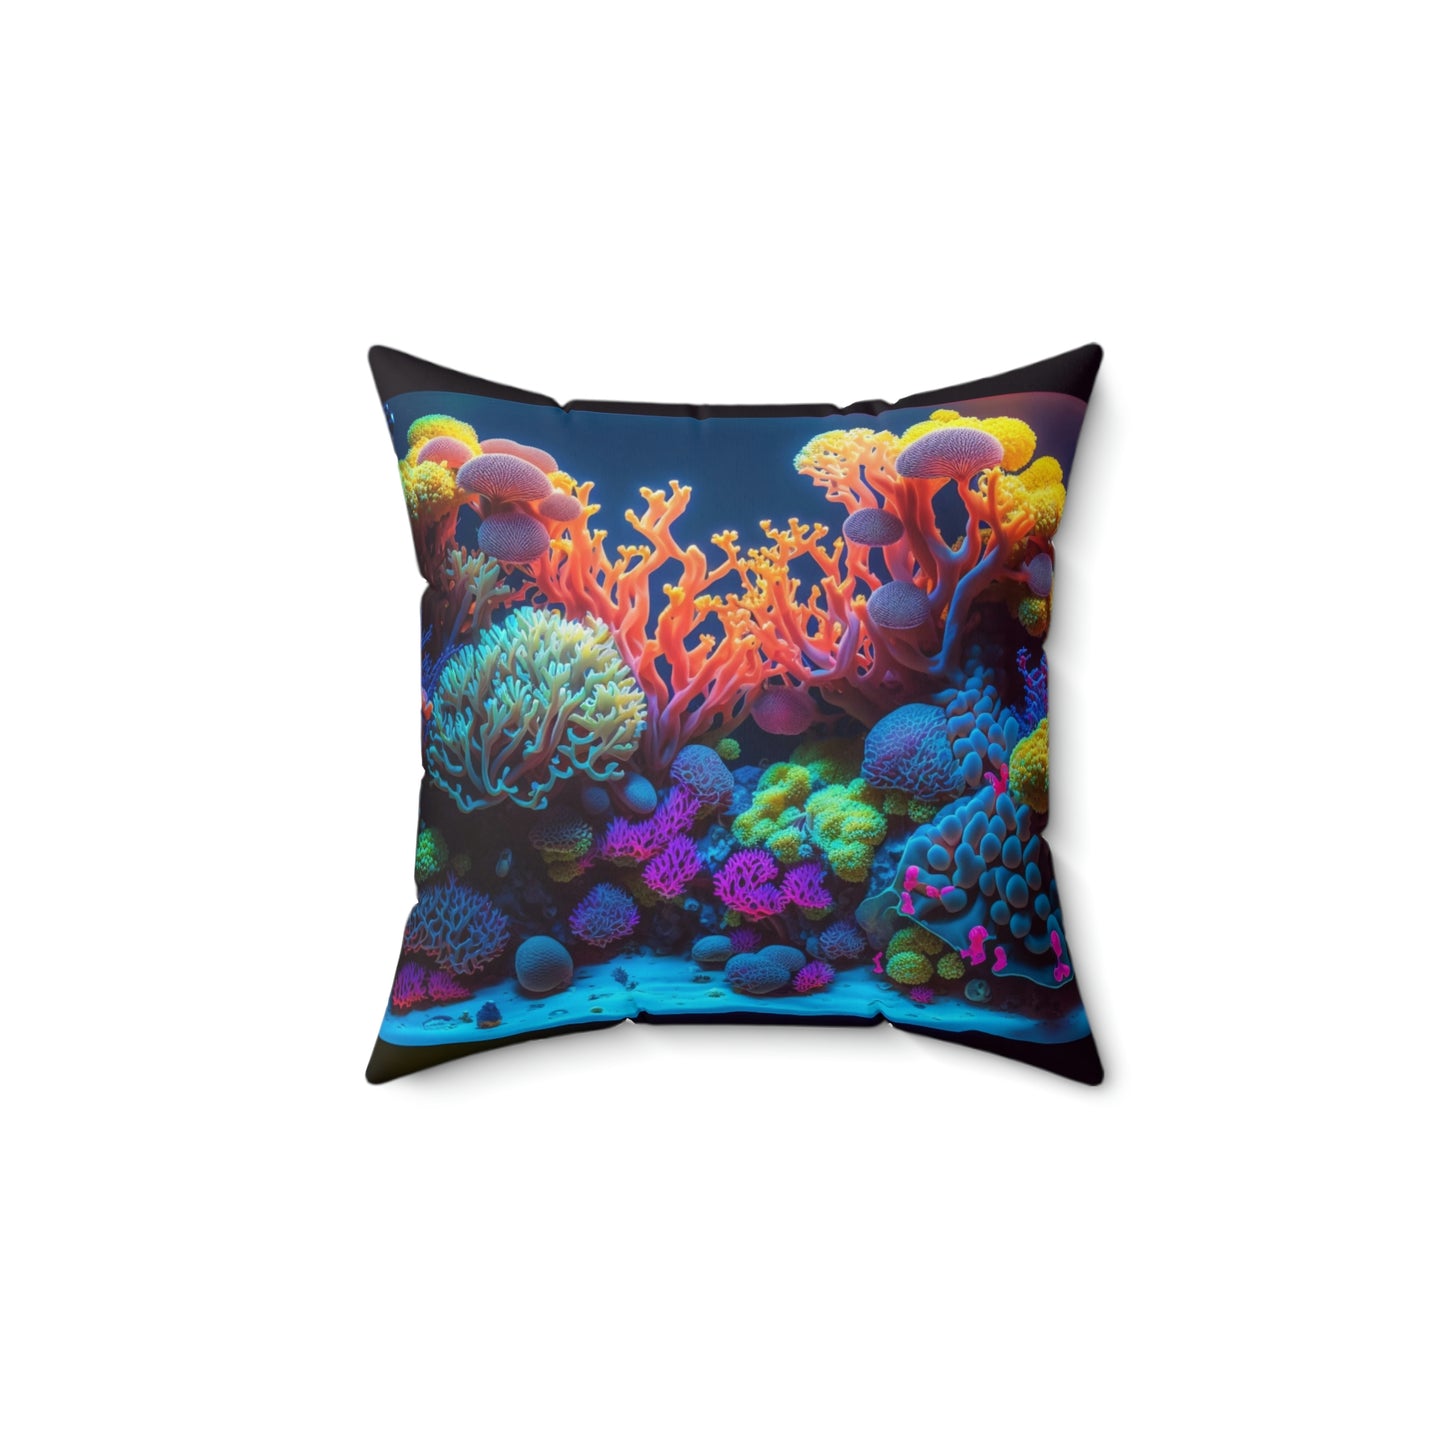 Underwater Wonders Pillow - Reef of Clowns